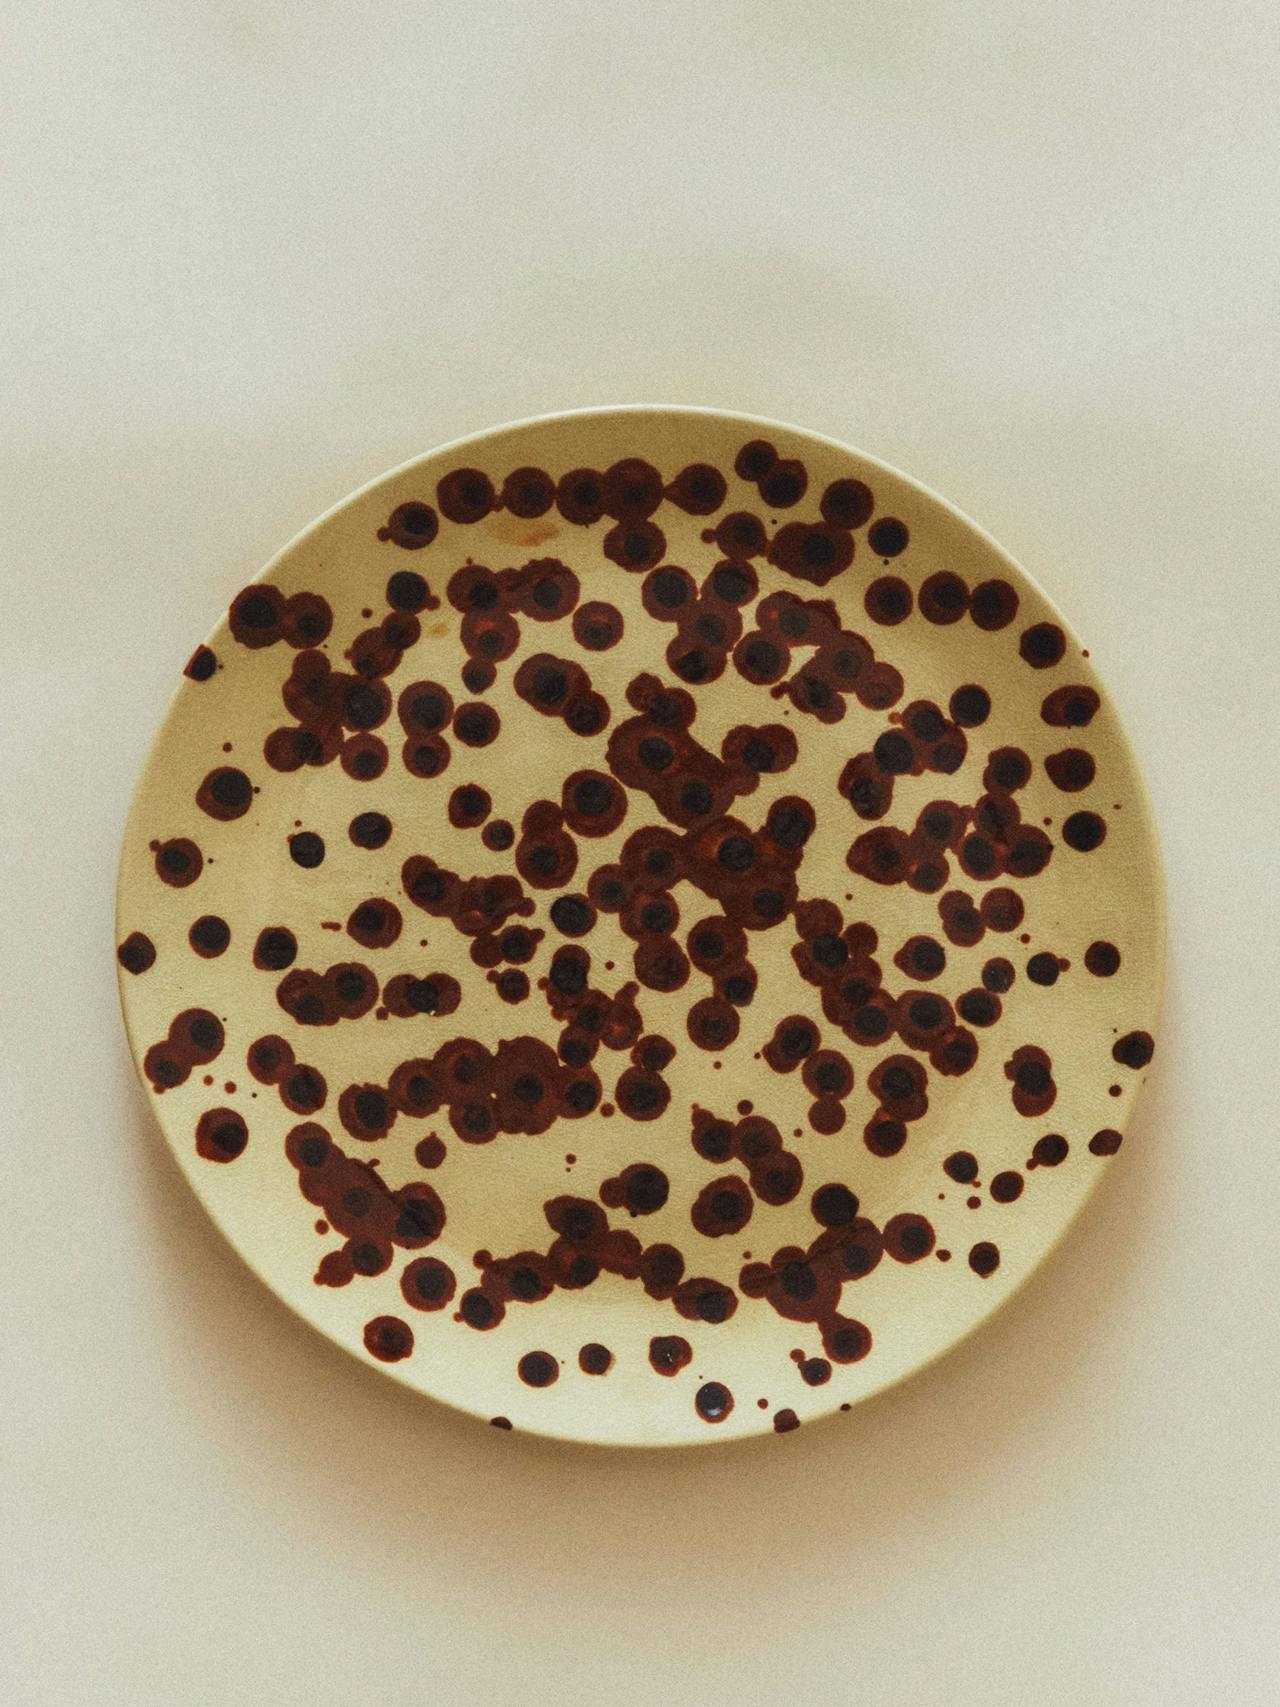 Polkda dot ceramic serving dish